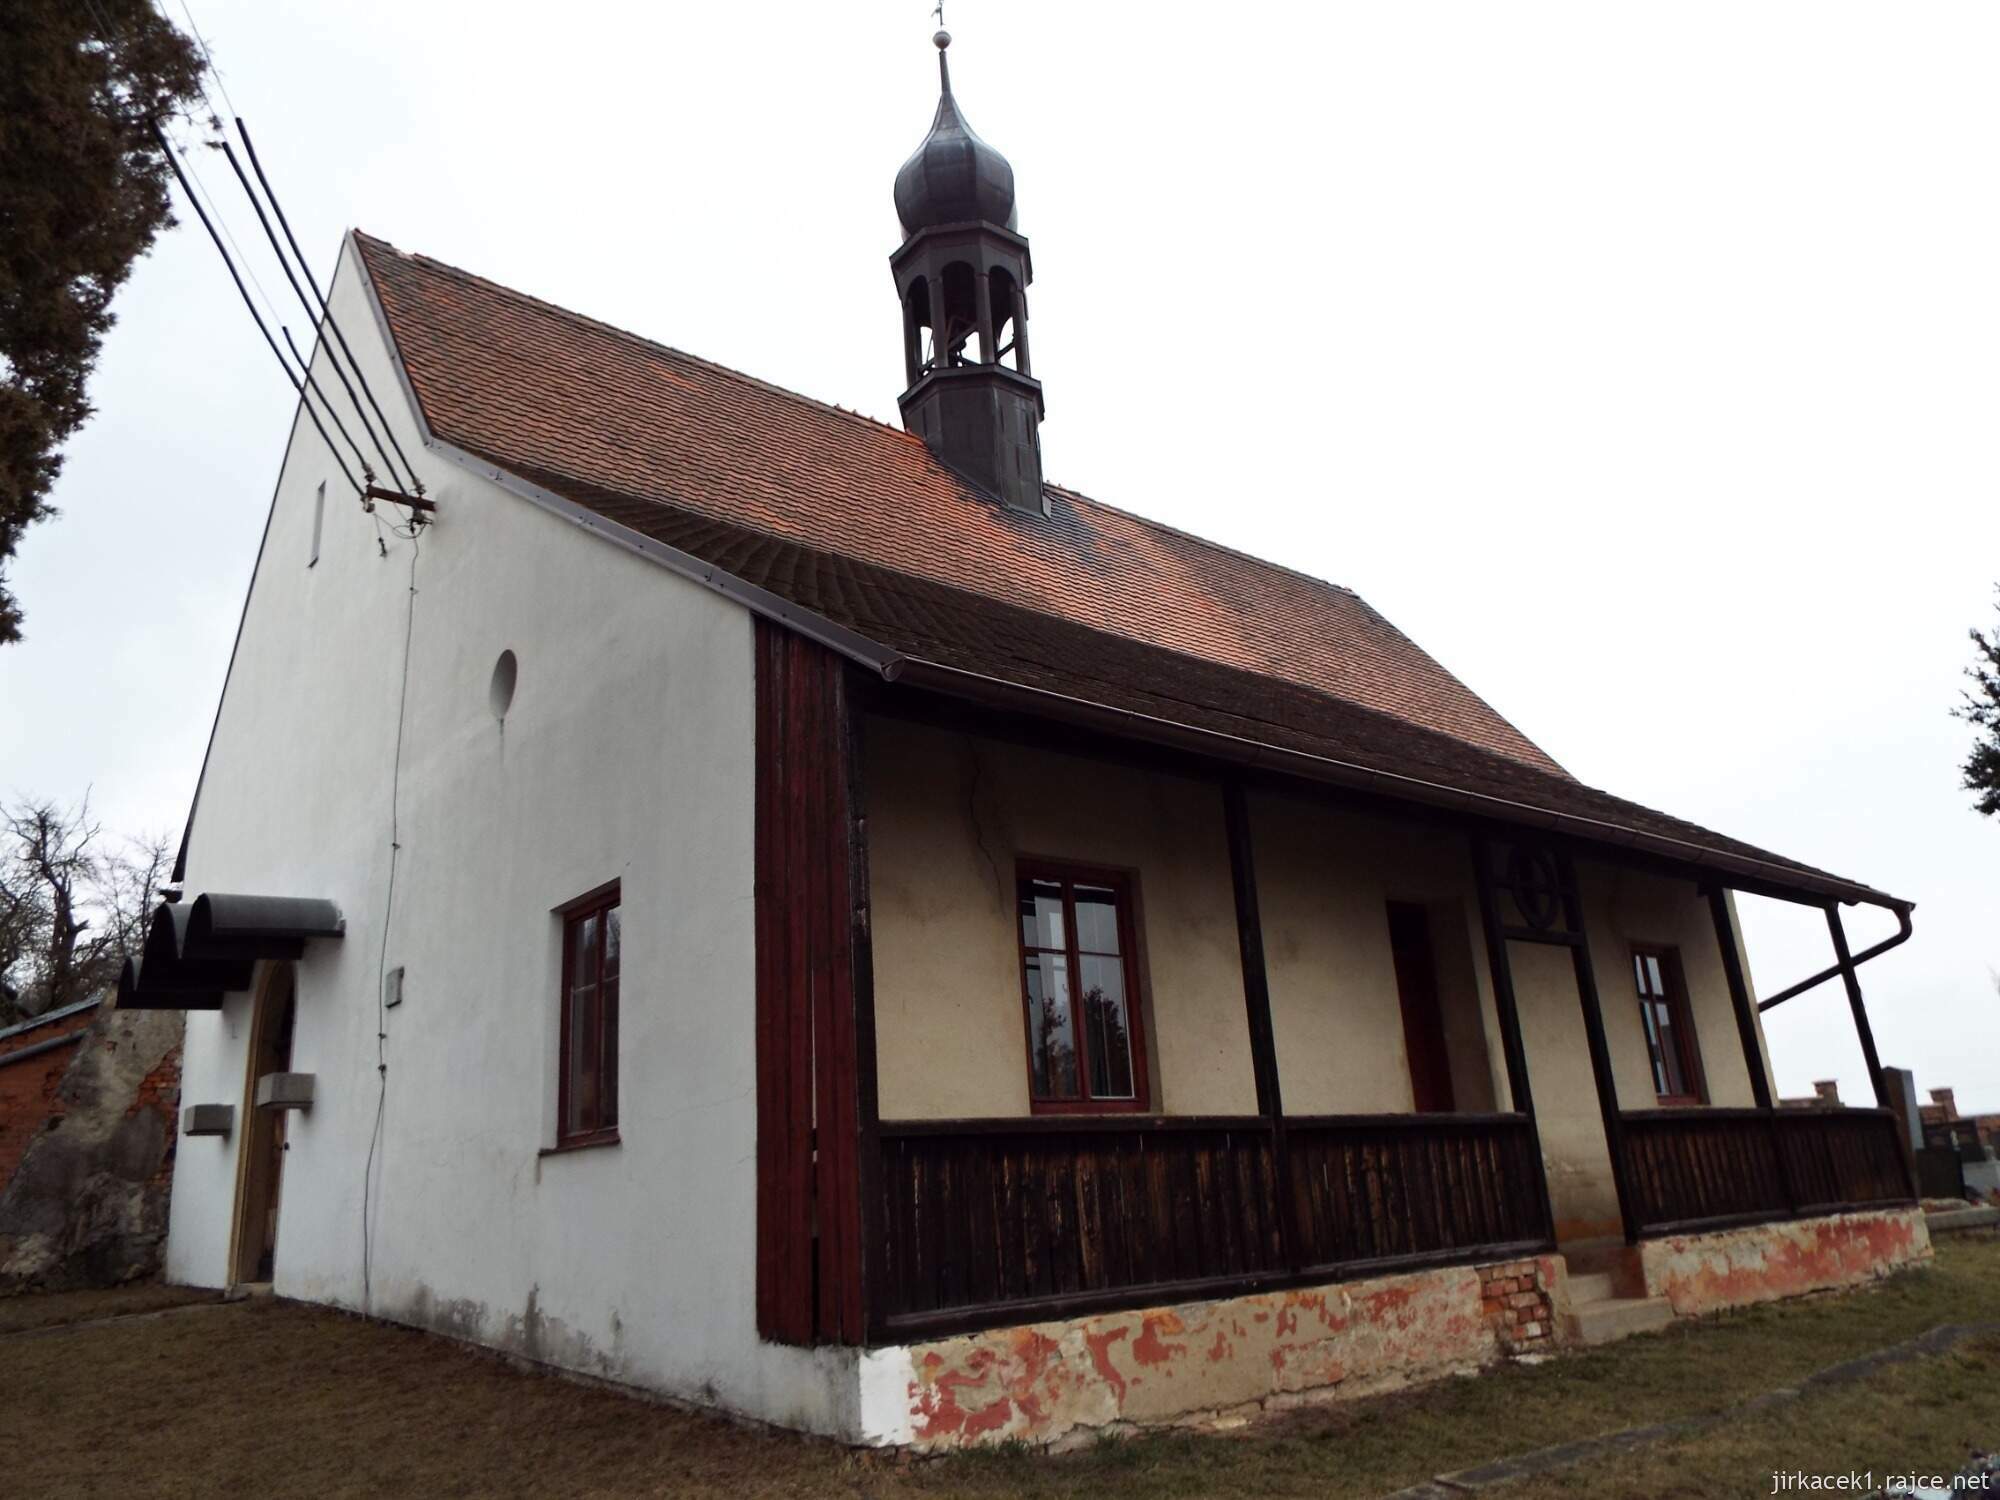 12 - Jevíčko - Kostel sv. Bartoloměje 17 - celkový pohled